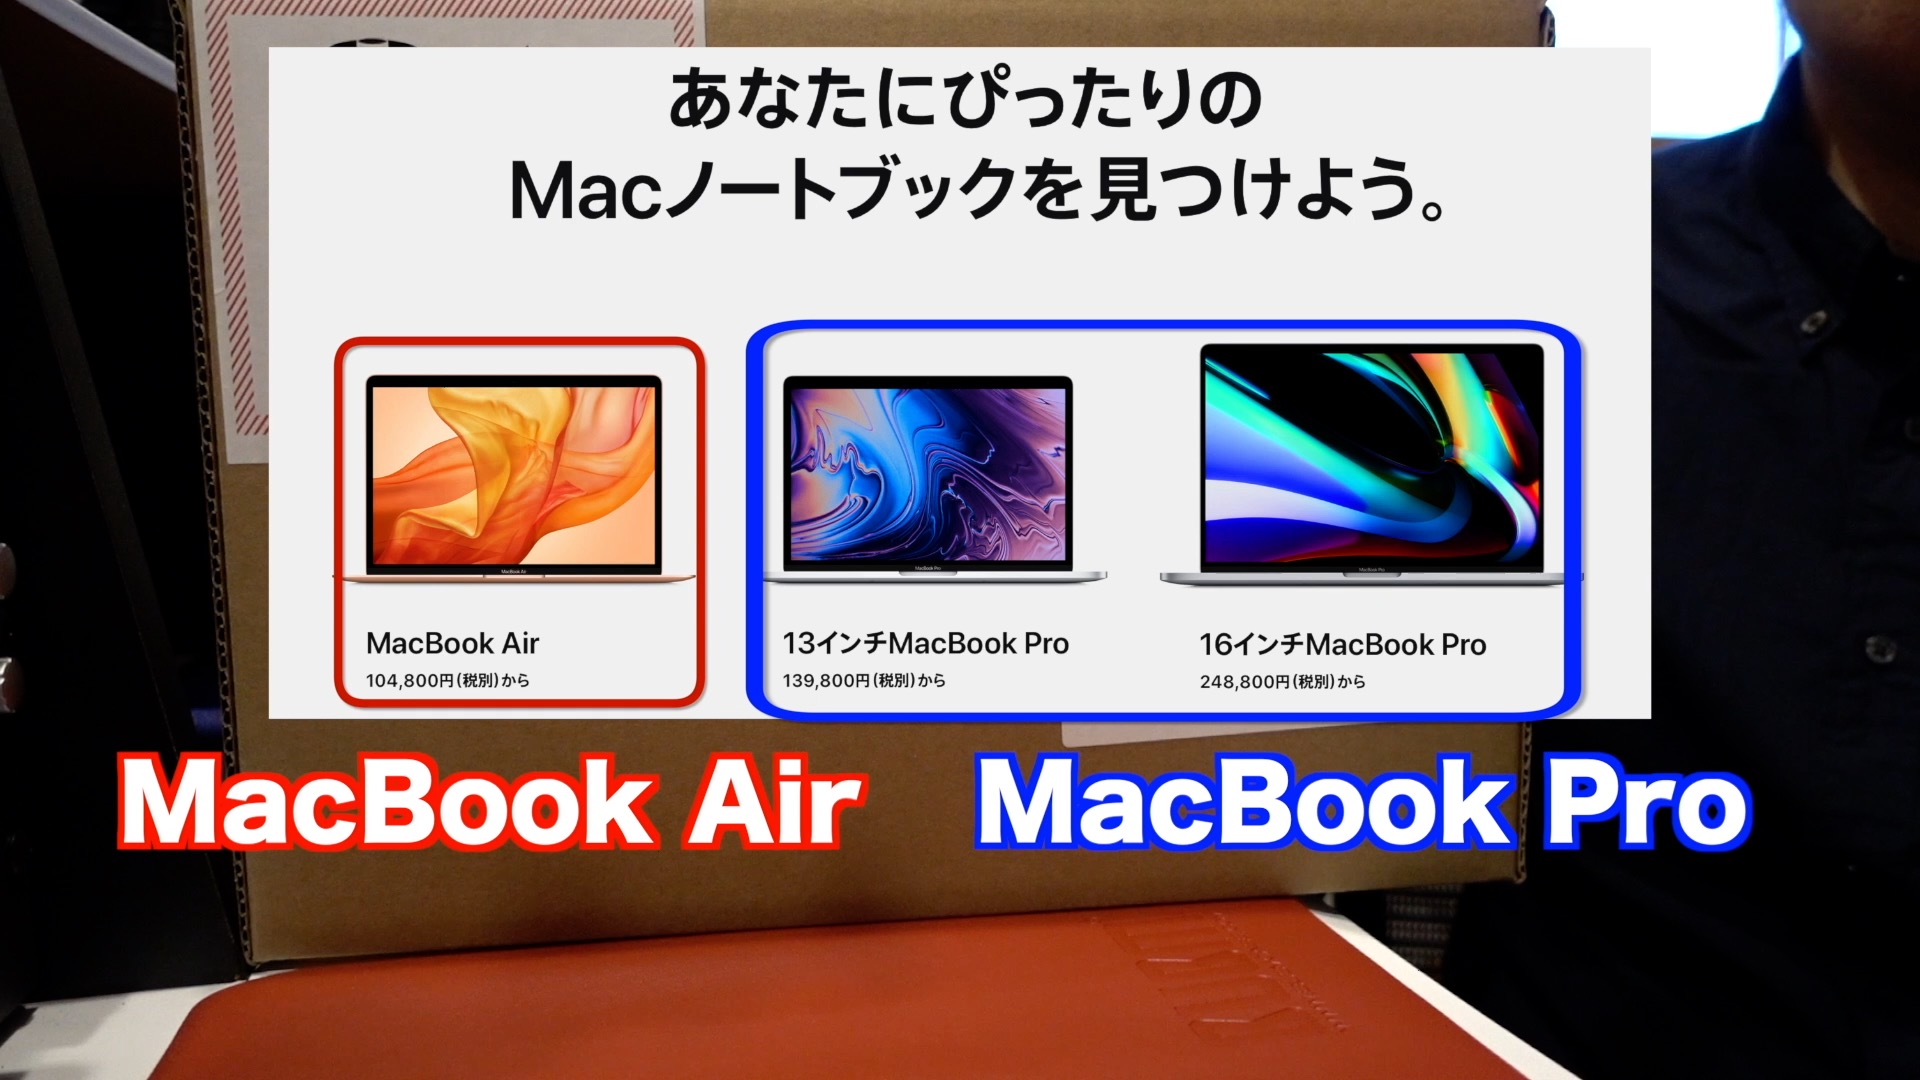 【開封レビュー】Apple MacBook Pro 13インチ 2019年モデル。初心者向けラインナップ比較あり。 ｜ ツキシマブログ